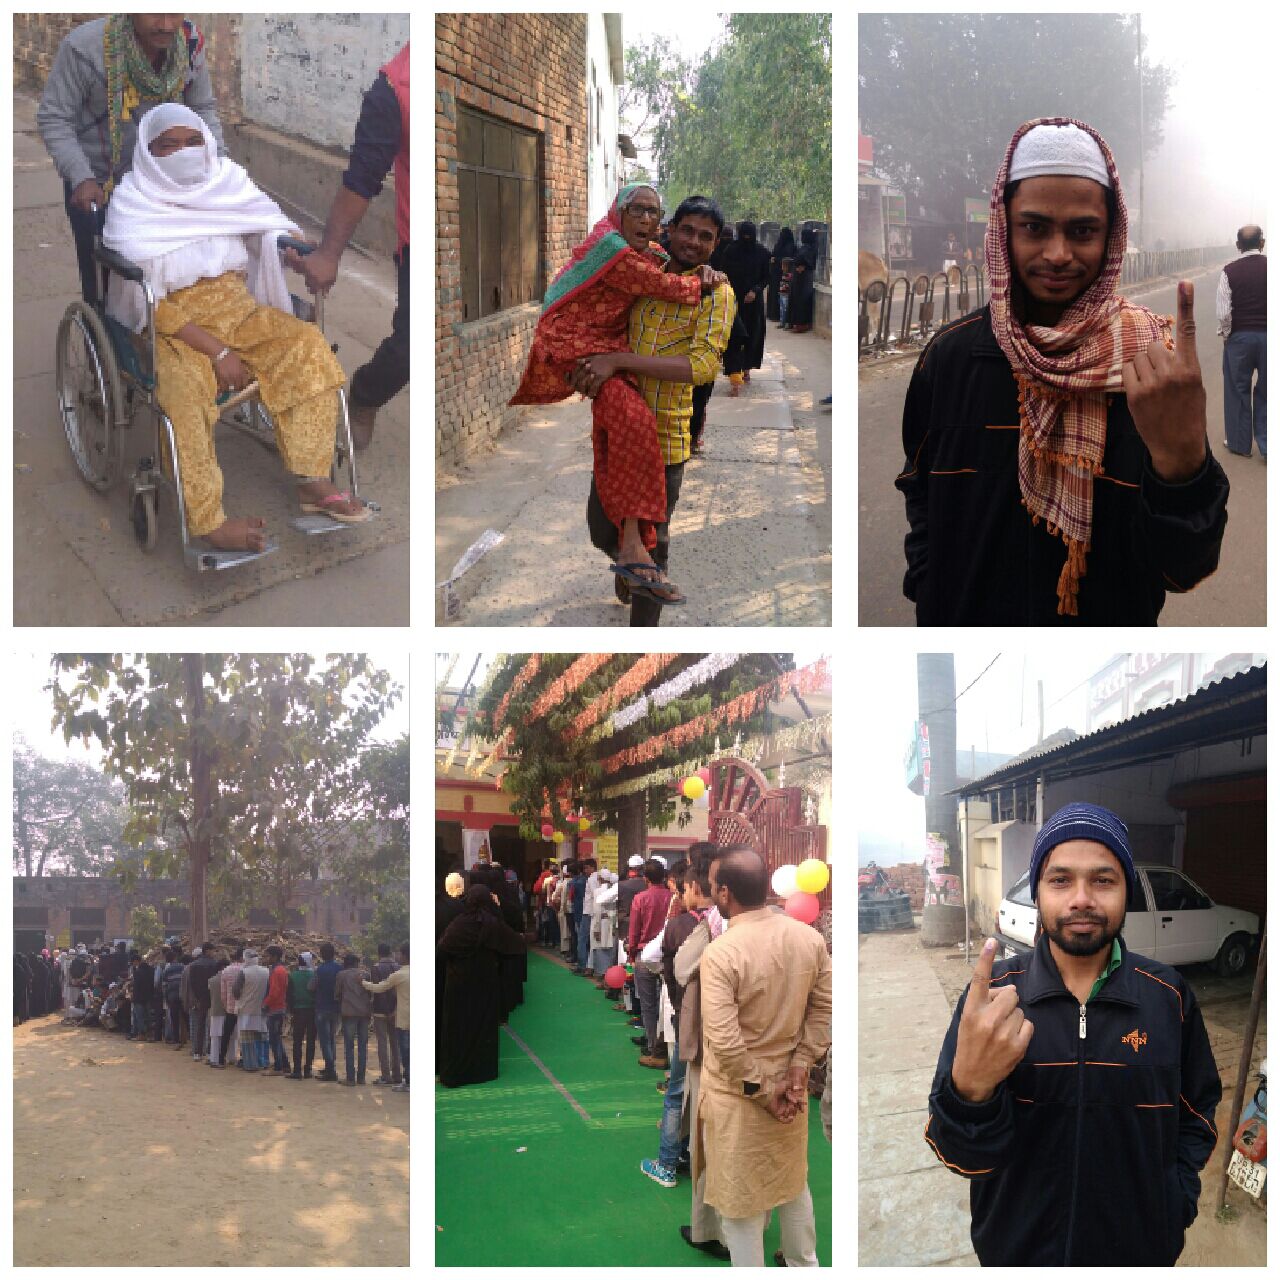 तीसरे व अंतिम चरण में 29 नवंबर को सीतापुर समेत कई अन्य जिलों में हुआ मतदान, सीतापूर जिले में 65.19% हुआ मतदान | New India Times